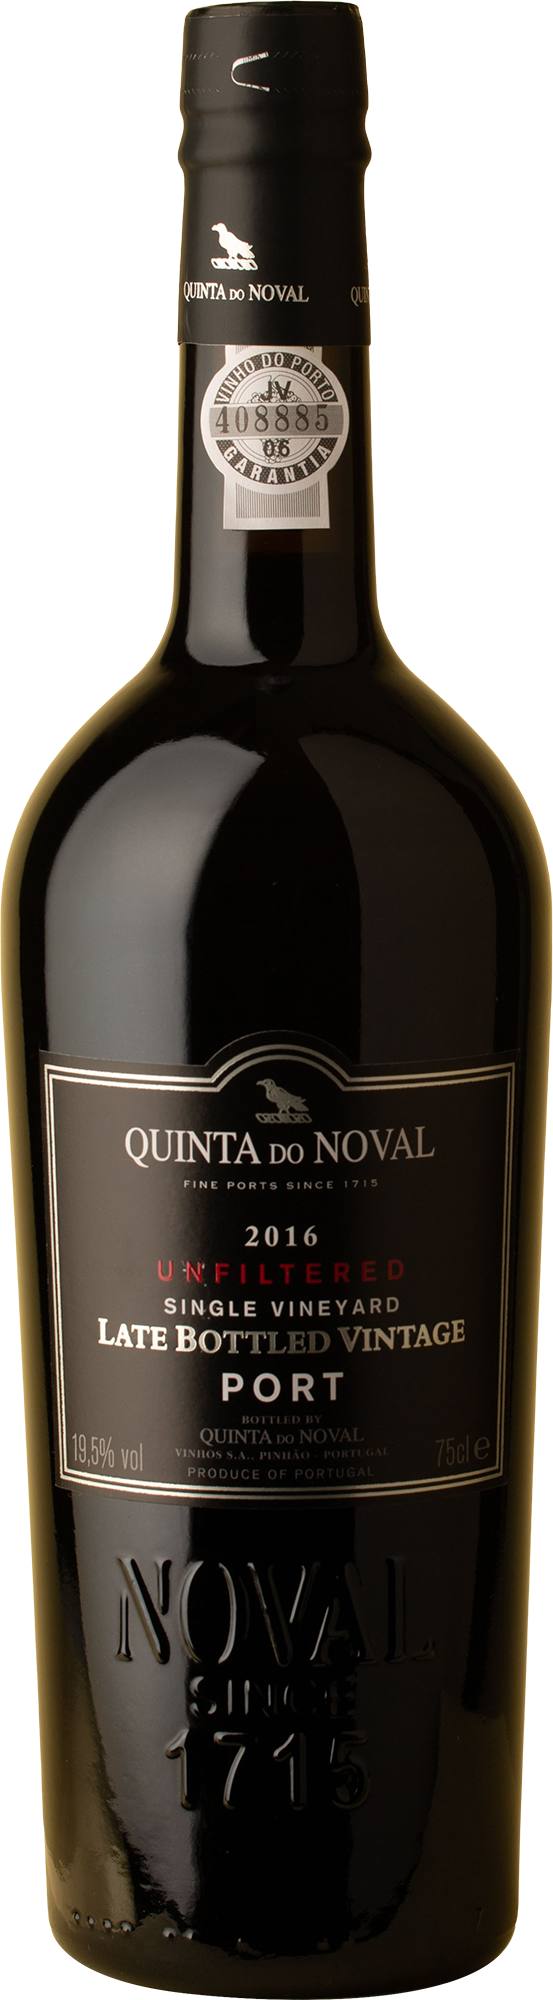 Quinta do Noval - LBV Unfiltered Vintage Port 2016 Not Wine